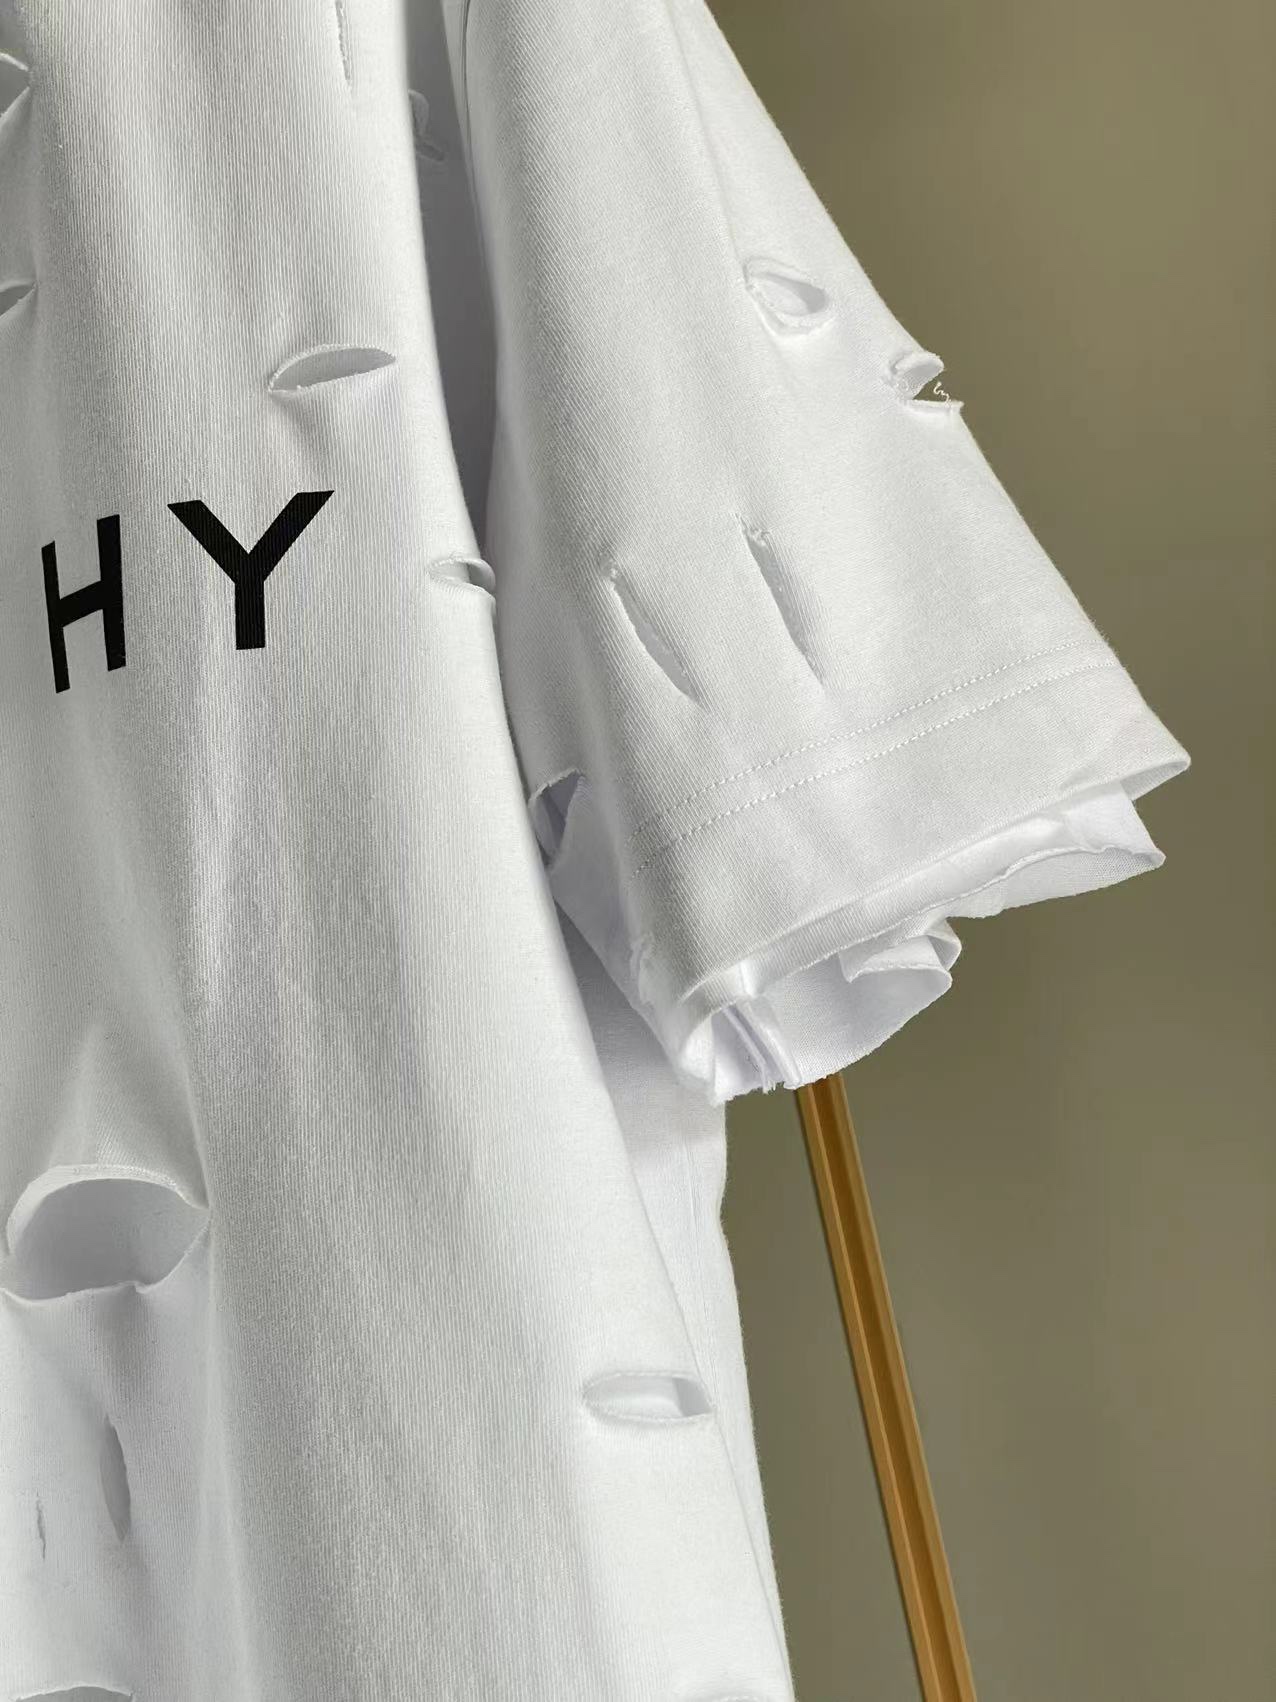 ジバンシィトップスコピ激安通販 純綿 Tシャツ 半袖 シンプル ダメージ加工のデザイン 5色可選 ホワイト_6